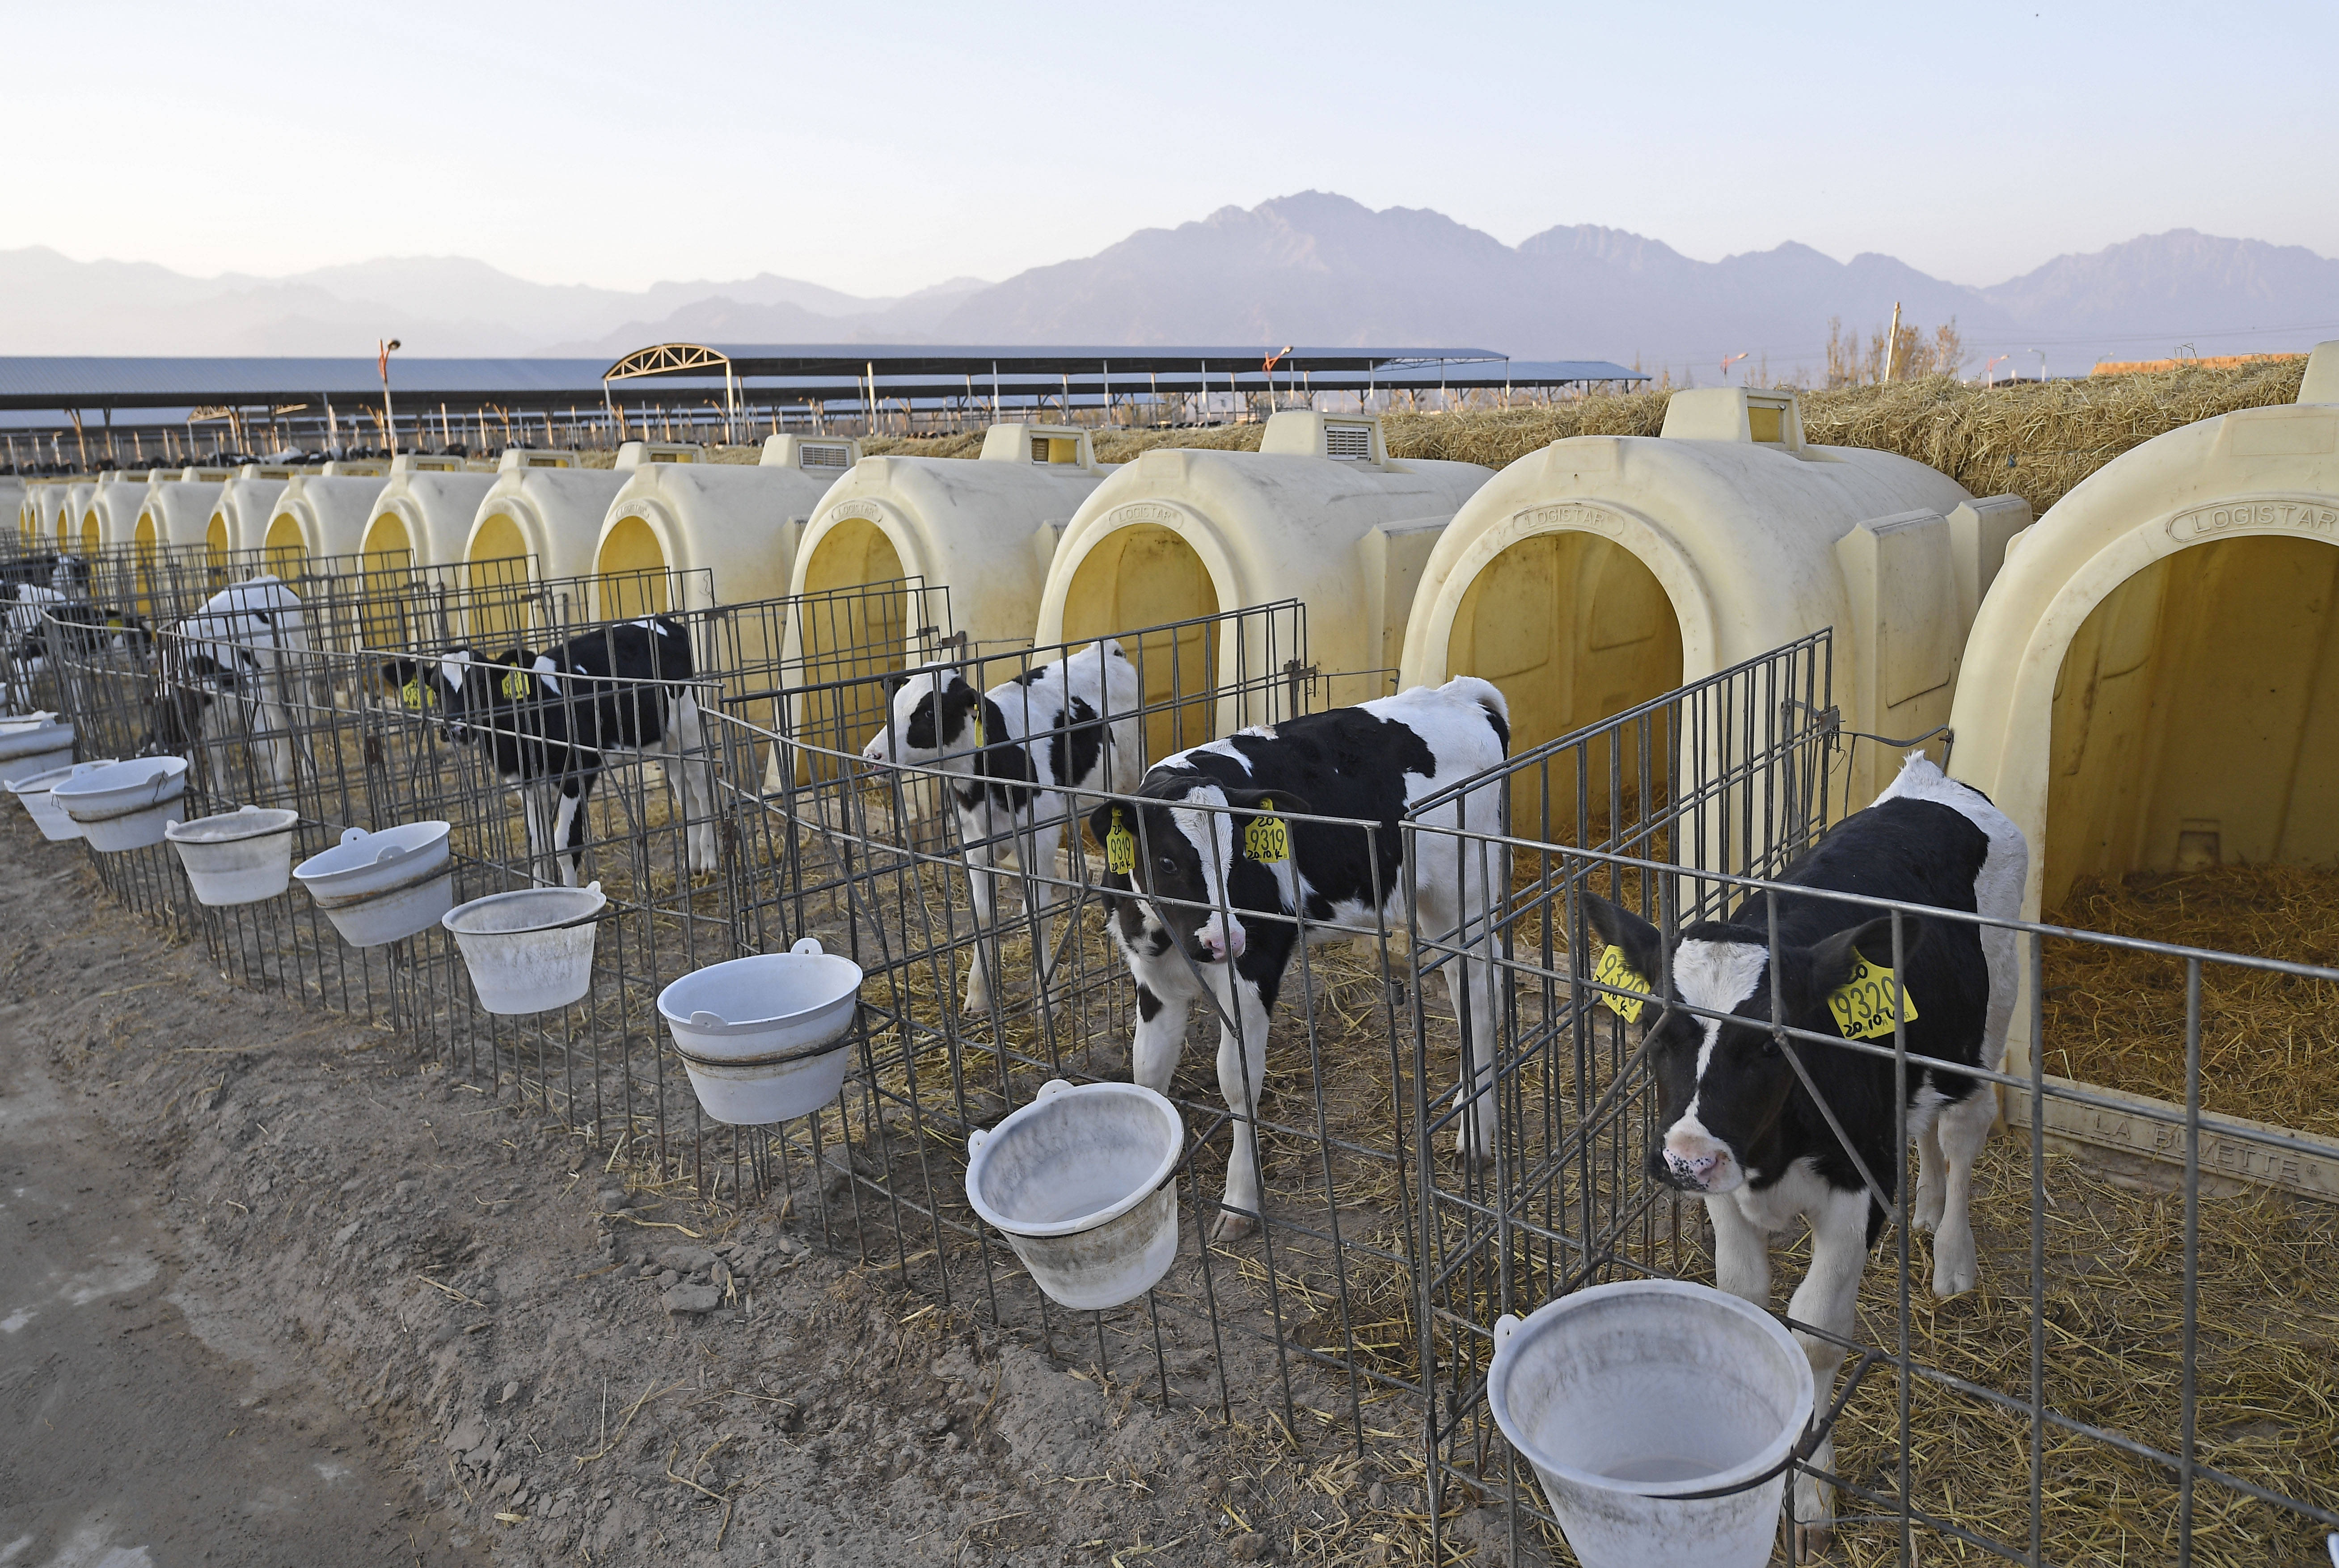 2020年11月9日 贺兰山下奶业兴 在宁夏农垦贺兰山奶业有限公司奶牛